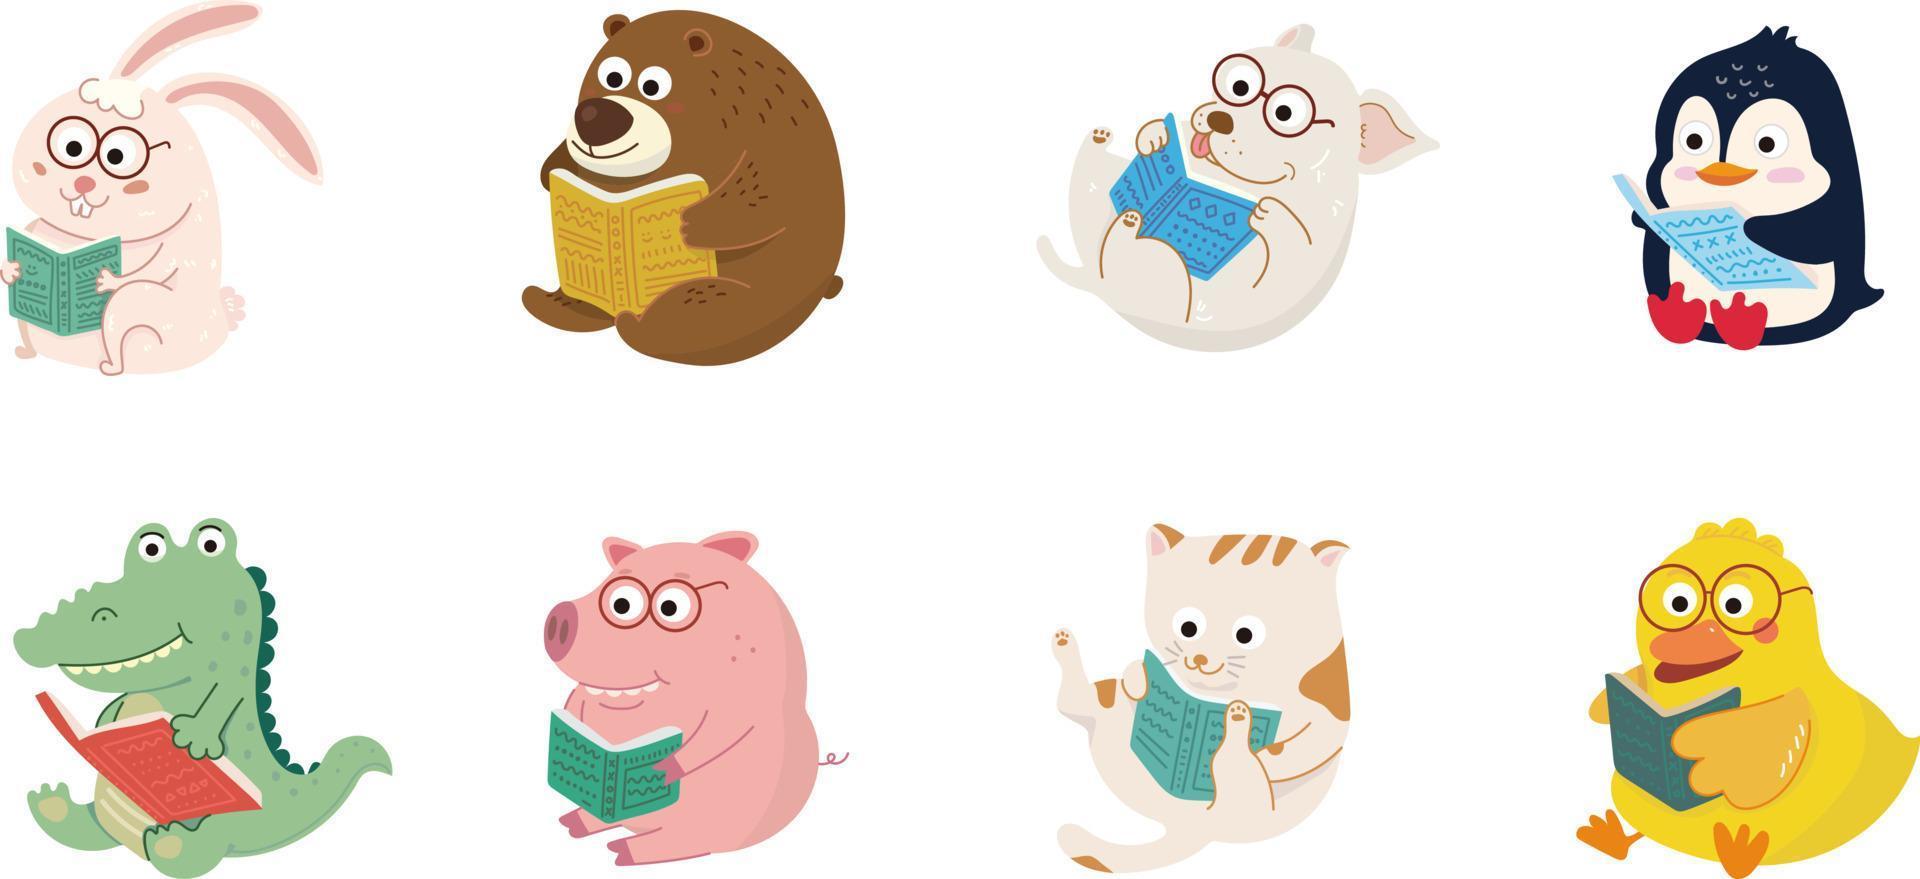 lindos personajes de animales de dibujos animados leyendo libros,  ilustración educativa para niños. 7151273 Vector en Vecteezy